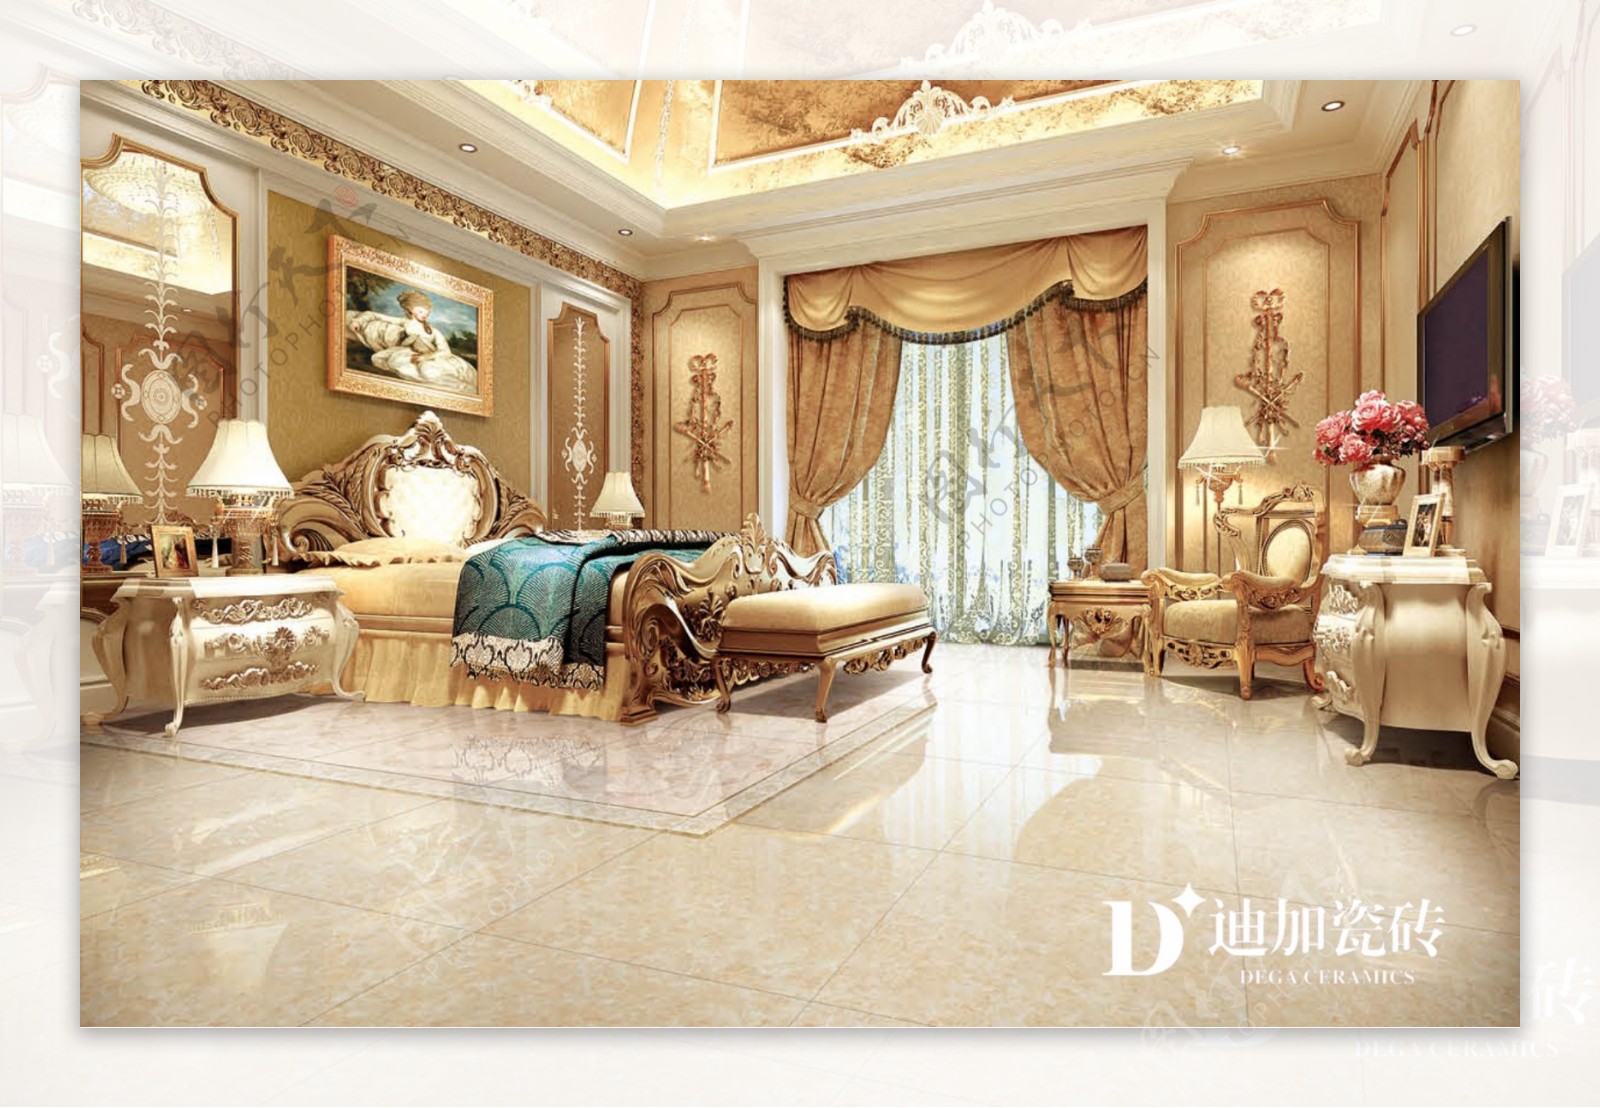 迪加瓷砖欧式家装首先品牌